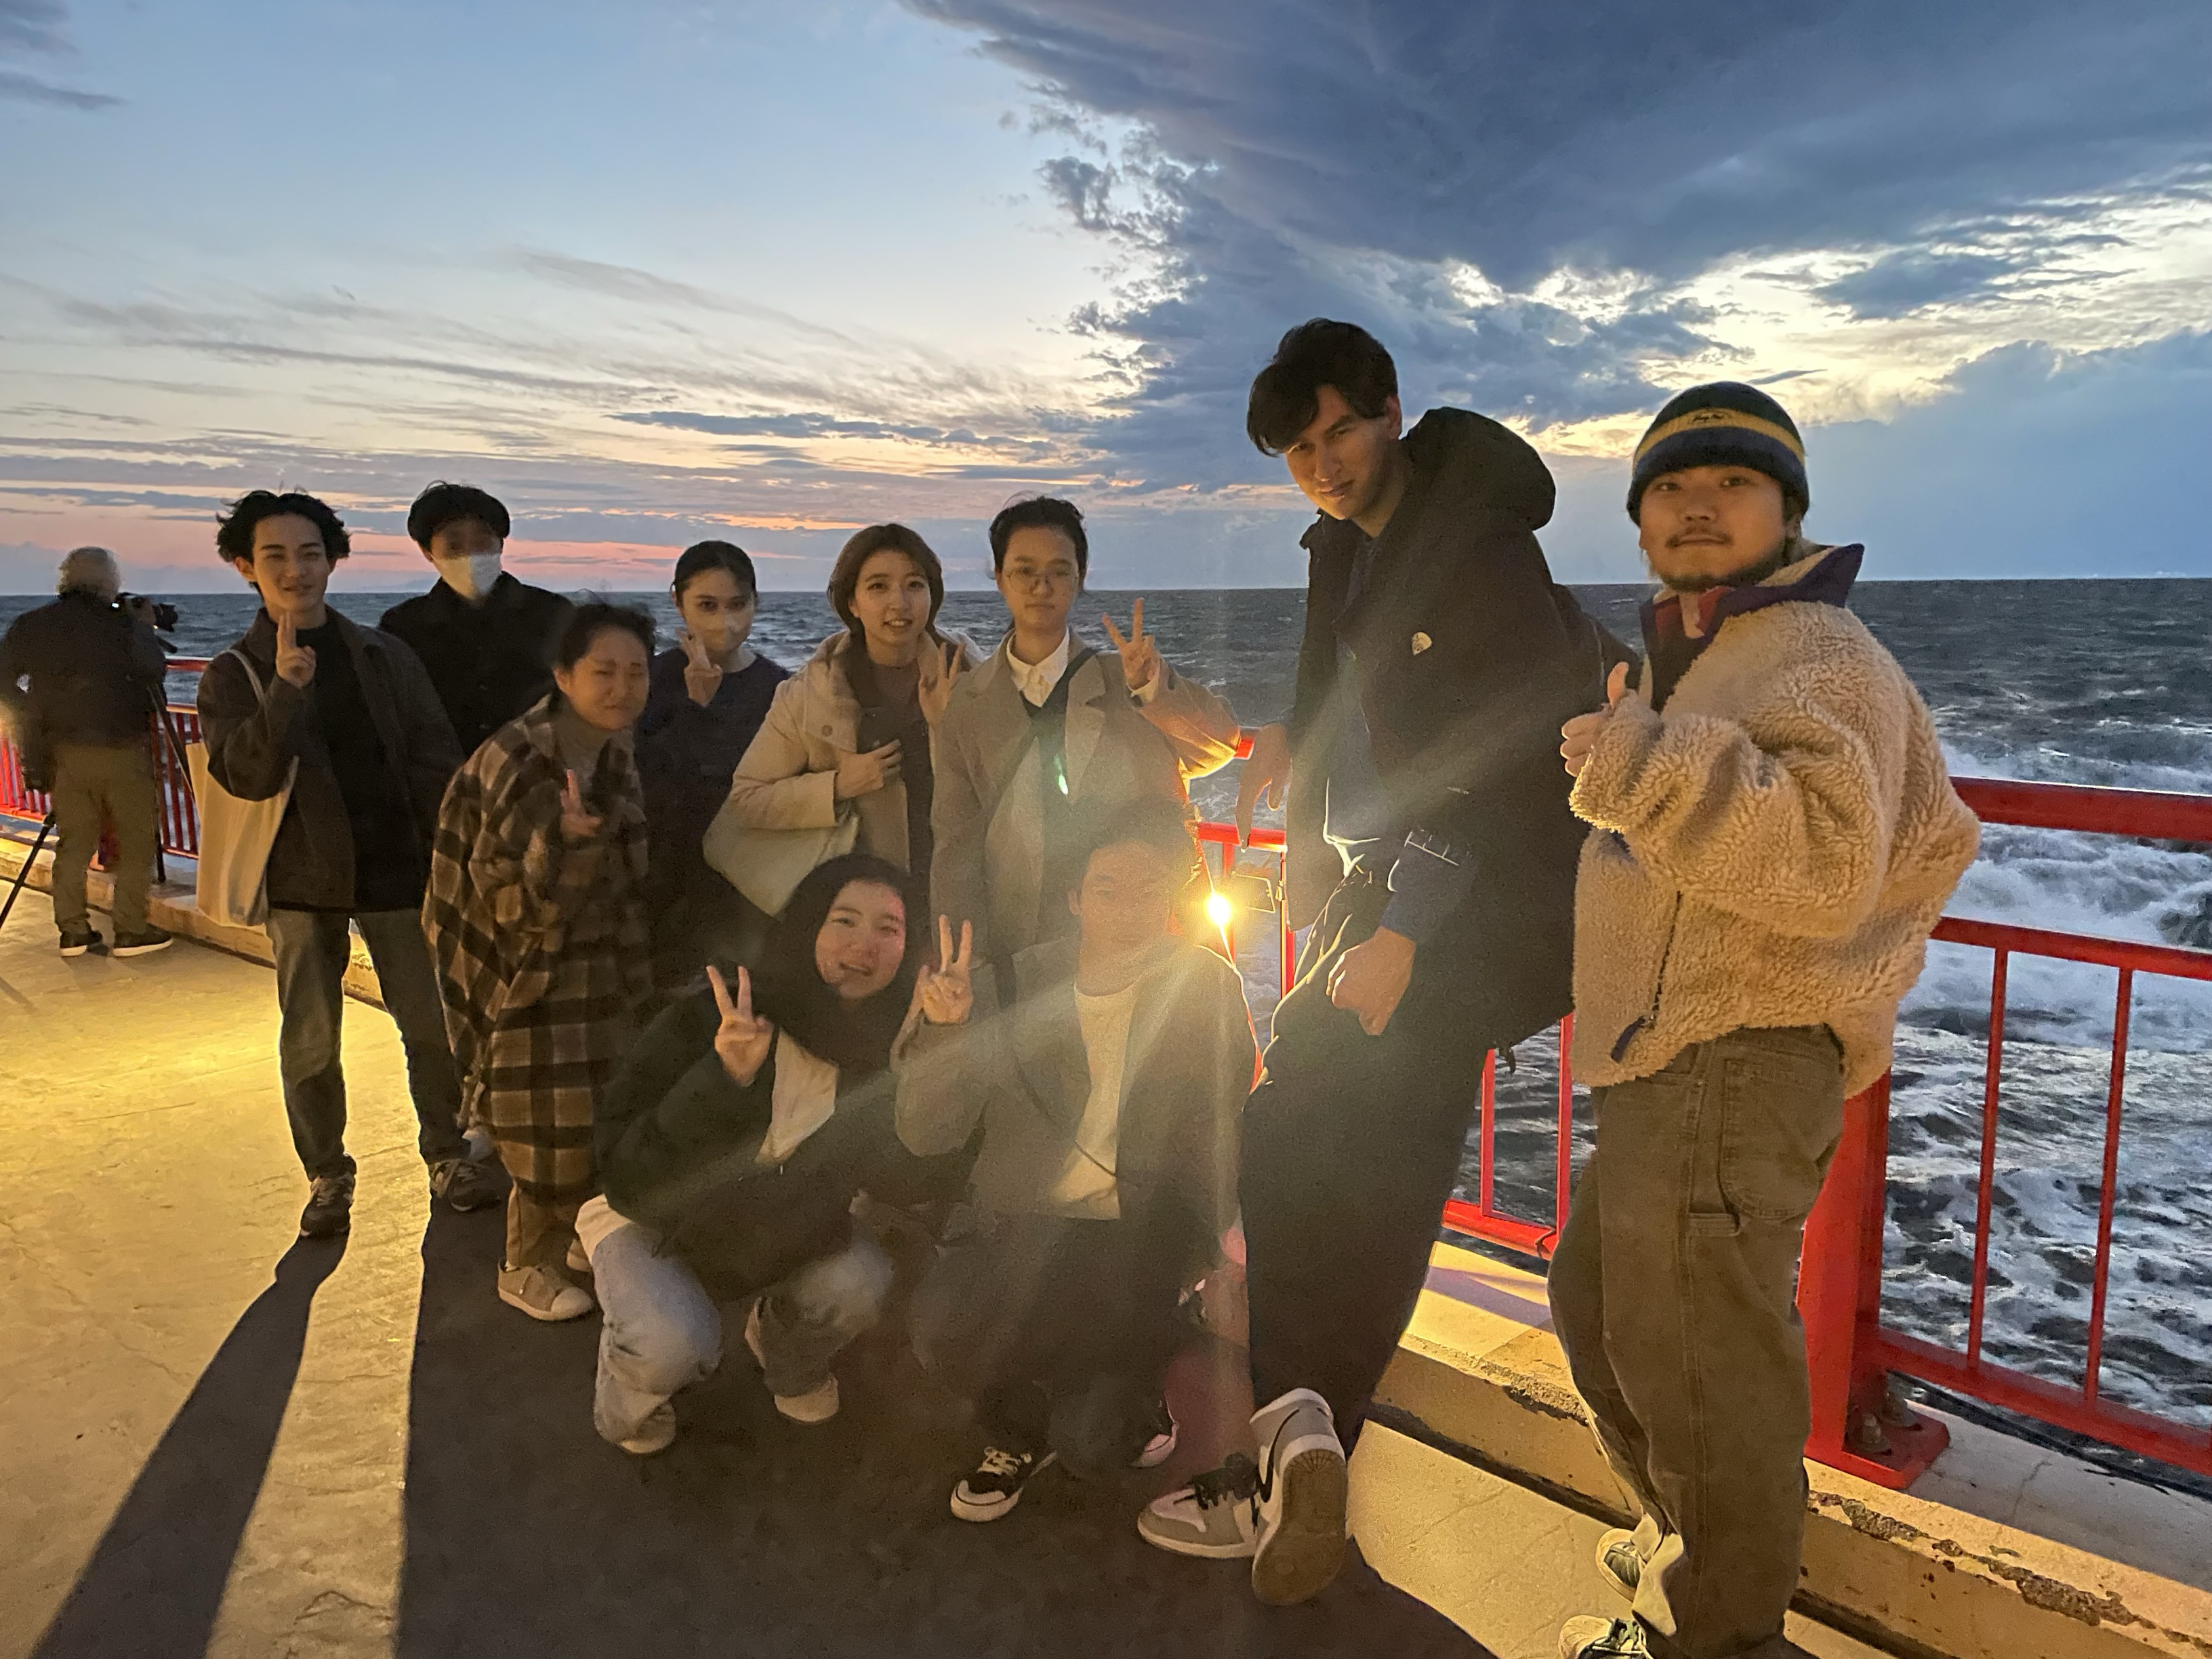 ツアーの最後を彩る江の島の夕陽